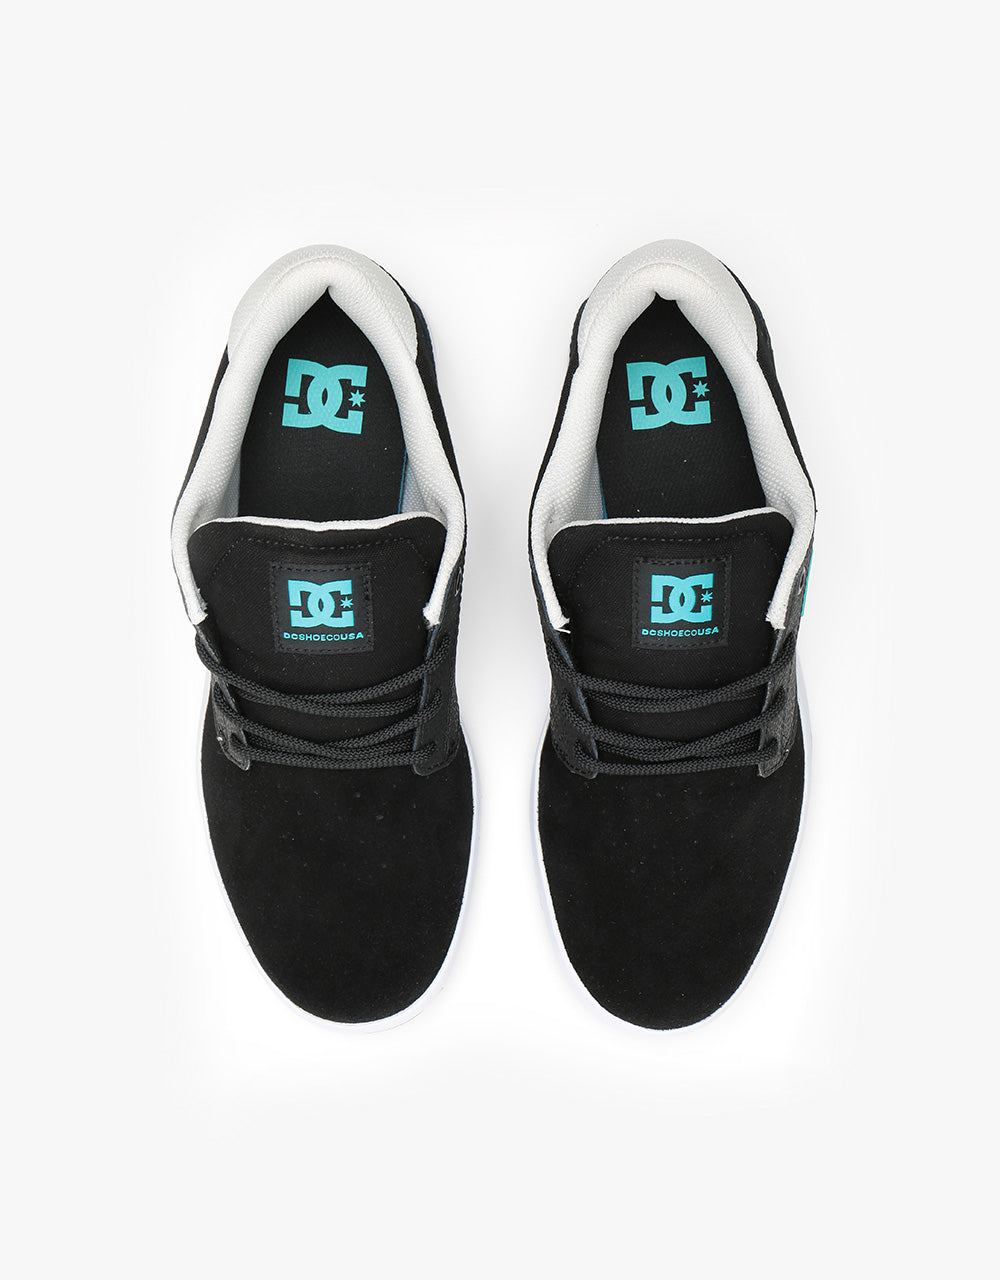 DC Plaza TC Skate Shoes - Black/Turquoise